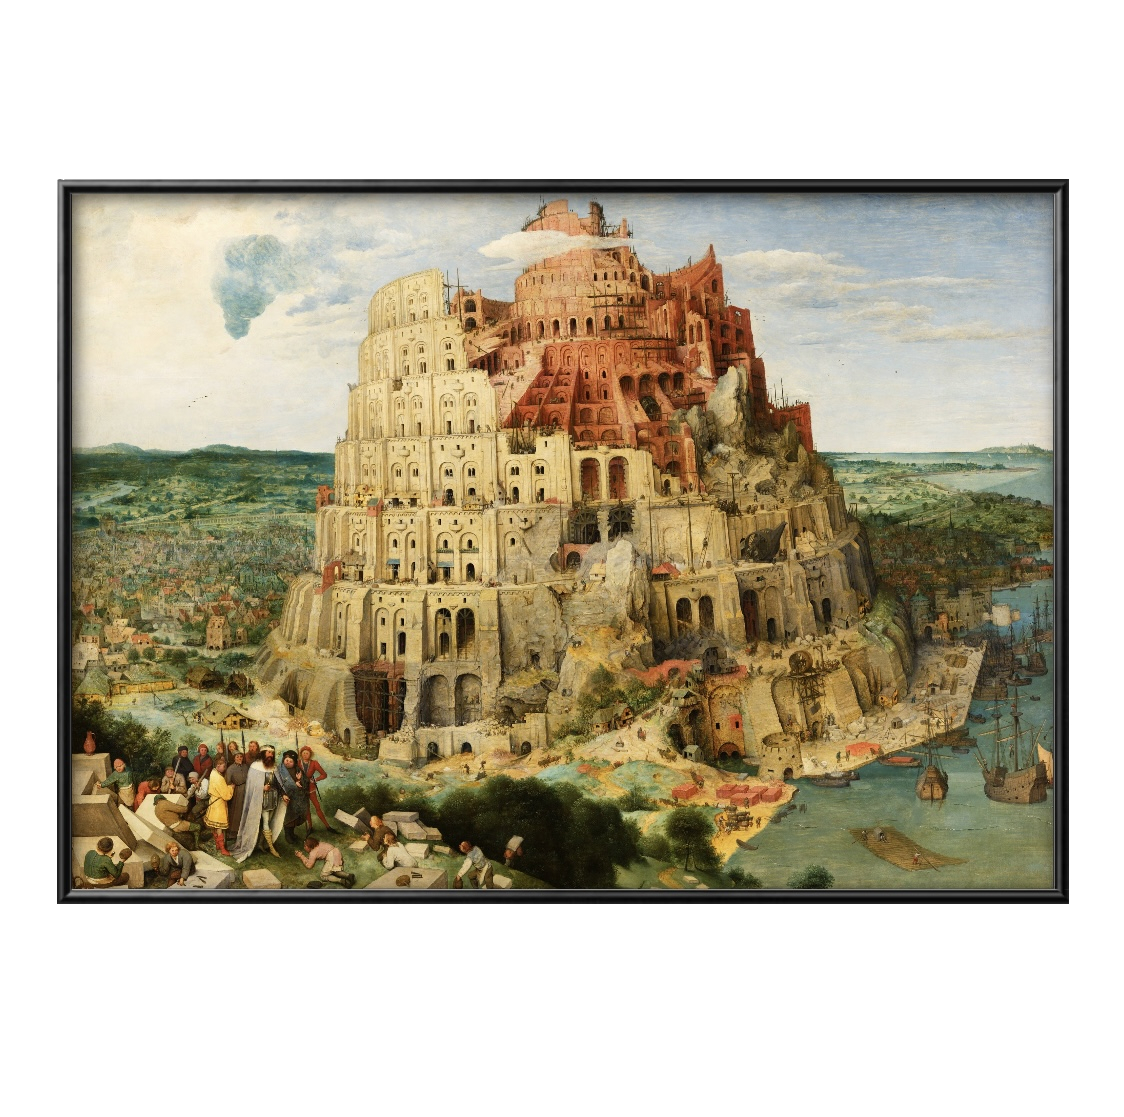 6780■무료배송!! 아트 포스터 페인팅 A3 사이즈 Pieter Bruegel 바벨탑 일러스트 디자인 북유럽 무광택 종이, 주택, 내부, 다른 사람